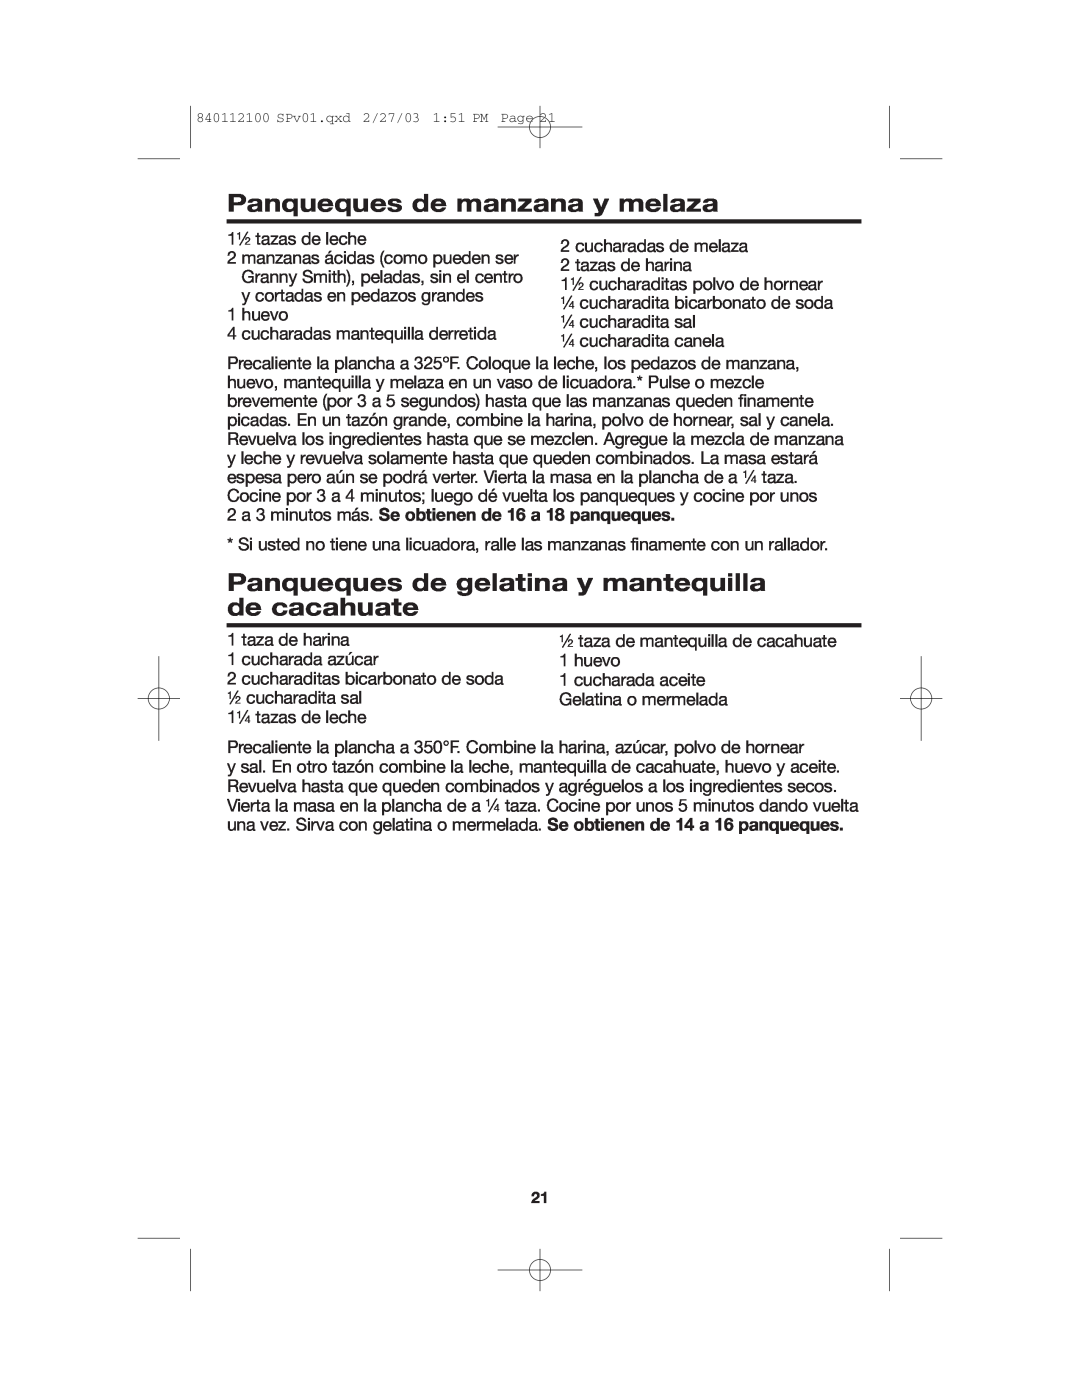 Proctor-Silex 840112100 manual Panqueques de manzana y melaza, Panqueques de gelatina y mantequilla de cacahuate 